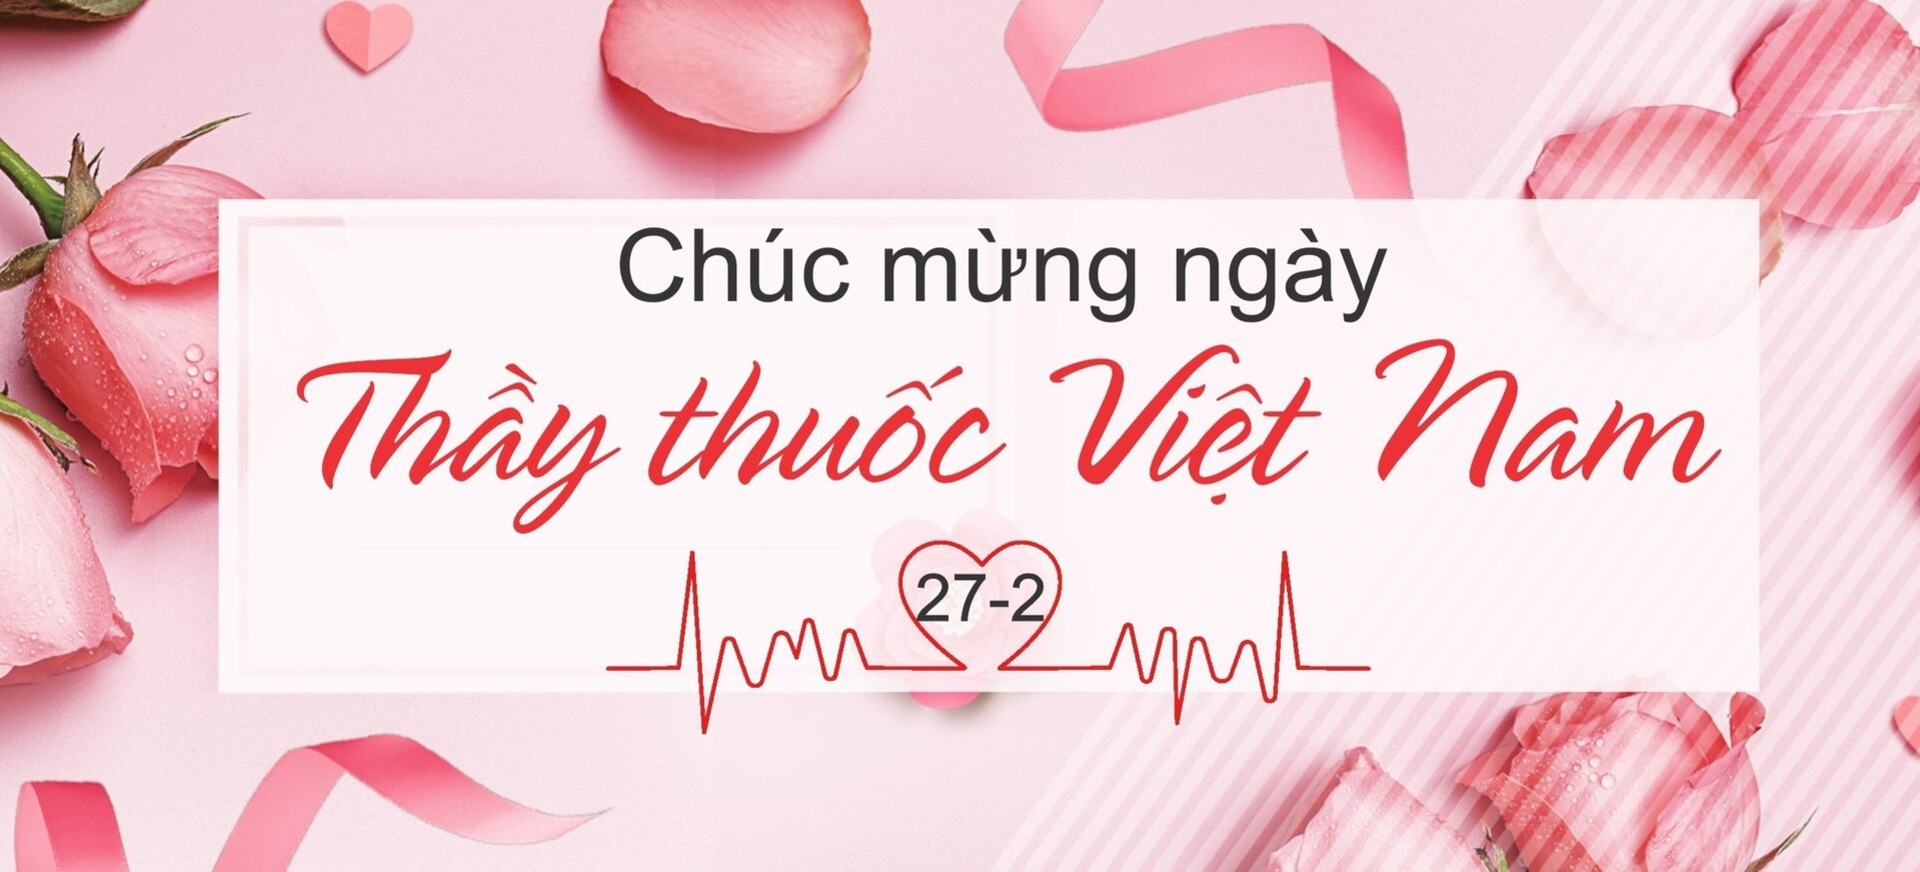 Tổng hợp lời chúc ngày Thầy thuốc Việt Nam 272 hay và ý nghĩa nhất